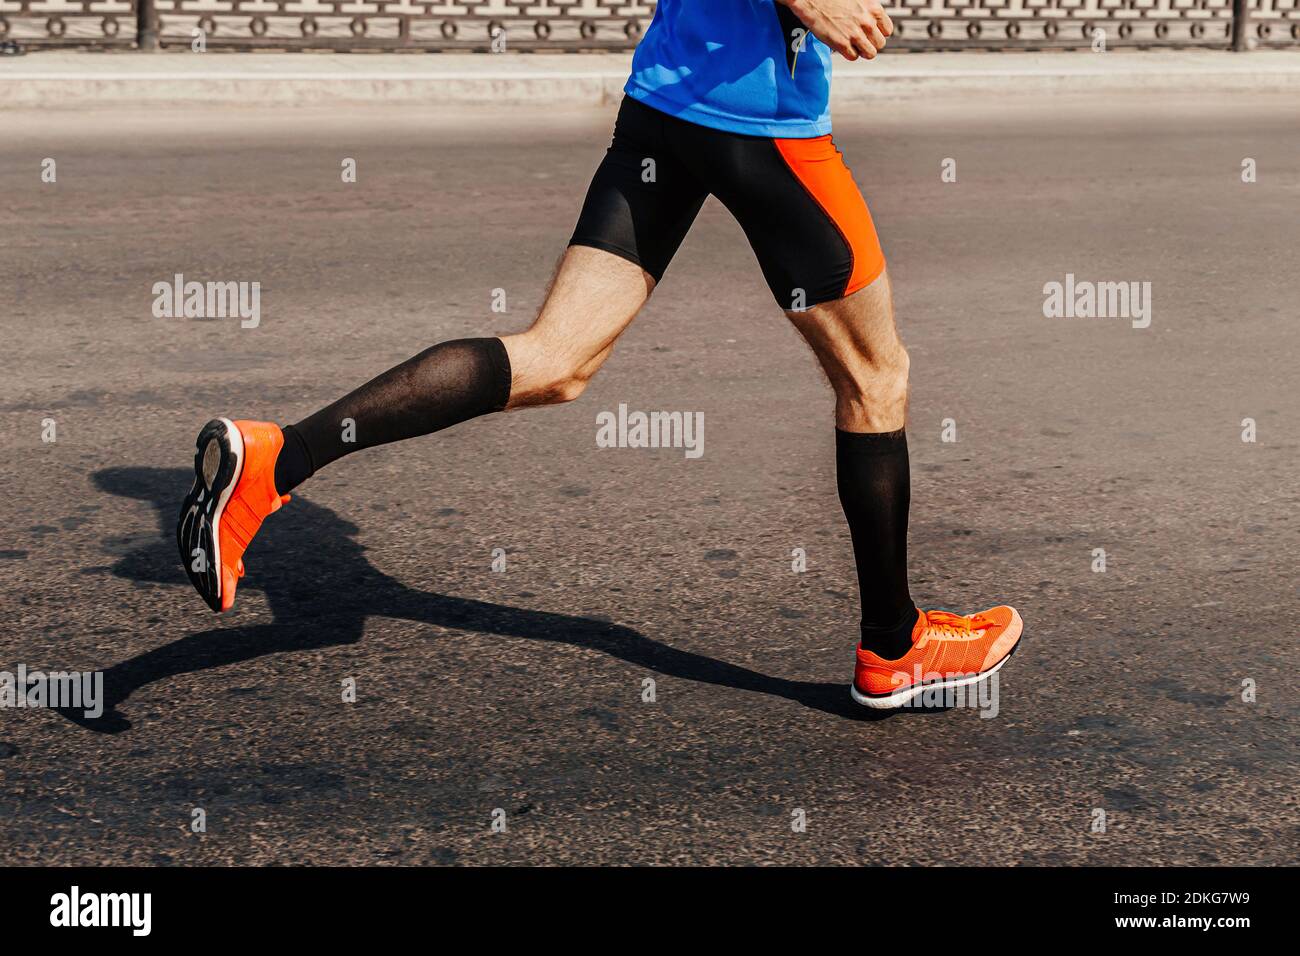 Beine männliche Läufer in Kompression Socken laufen Asphalt Stockfotografie  - Alamy